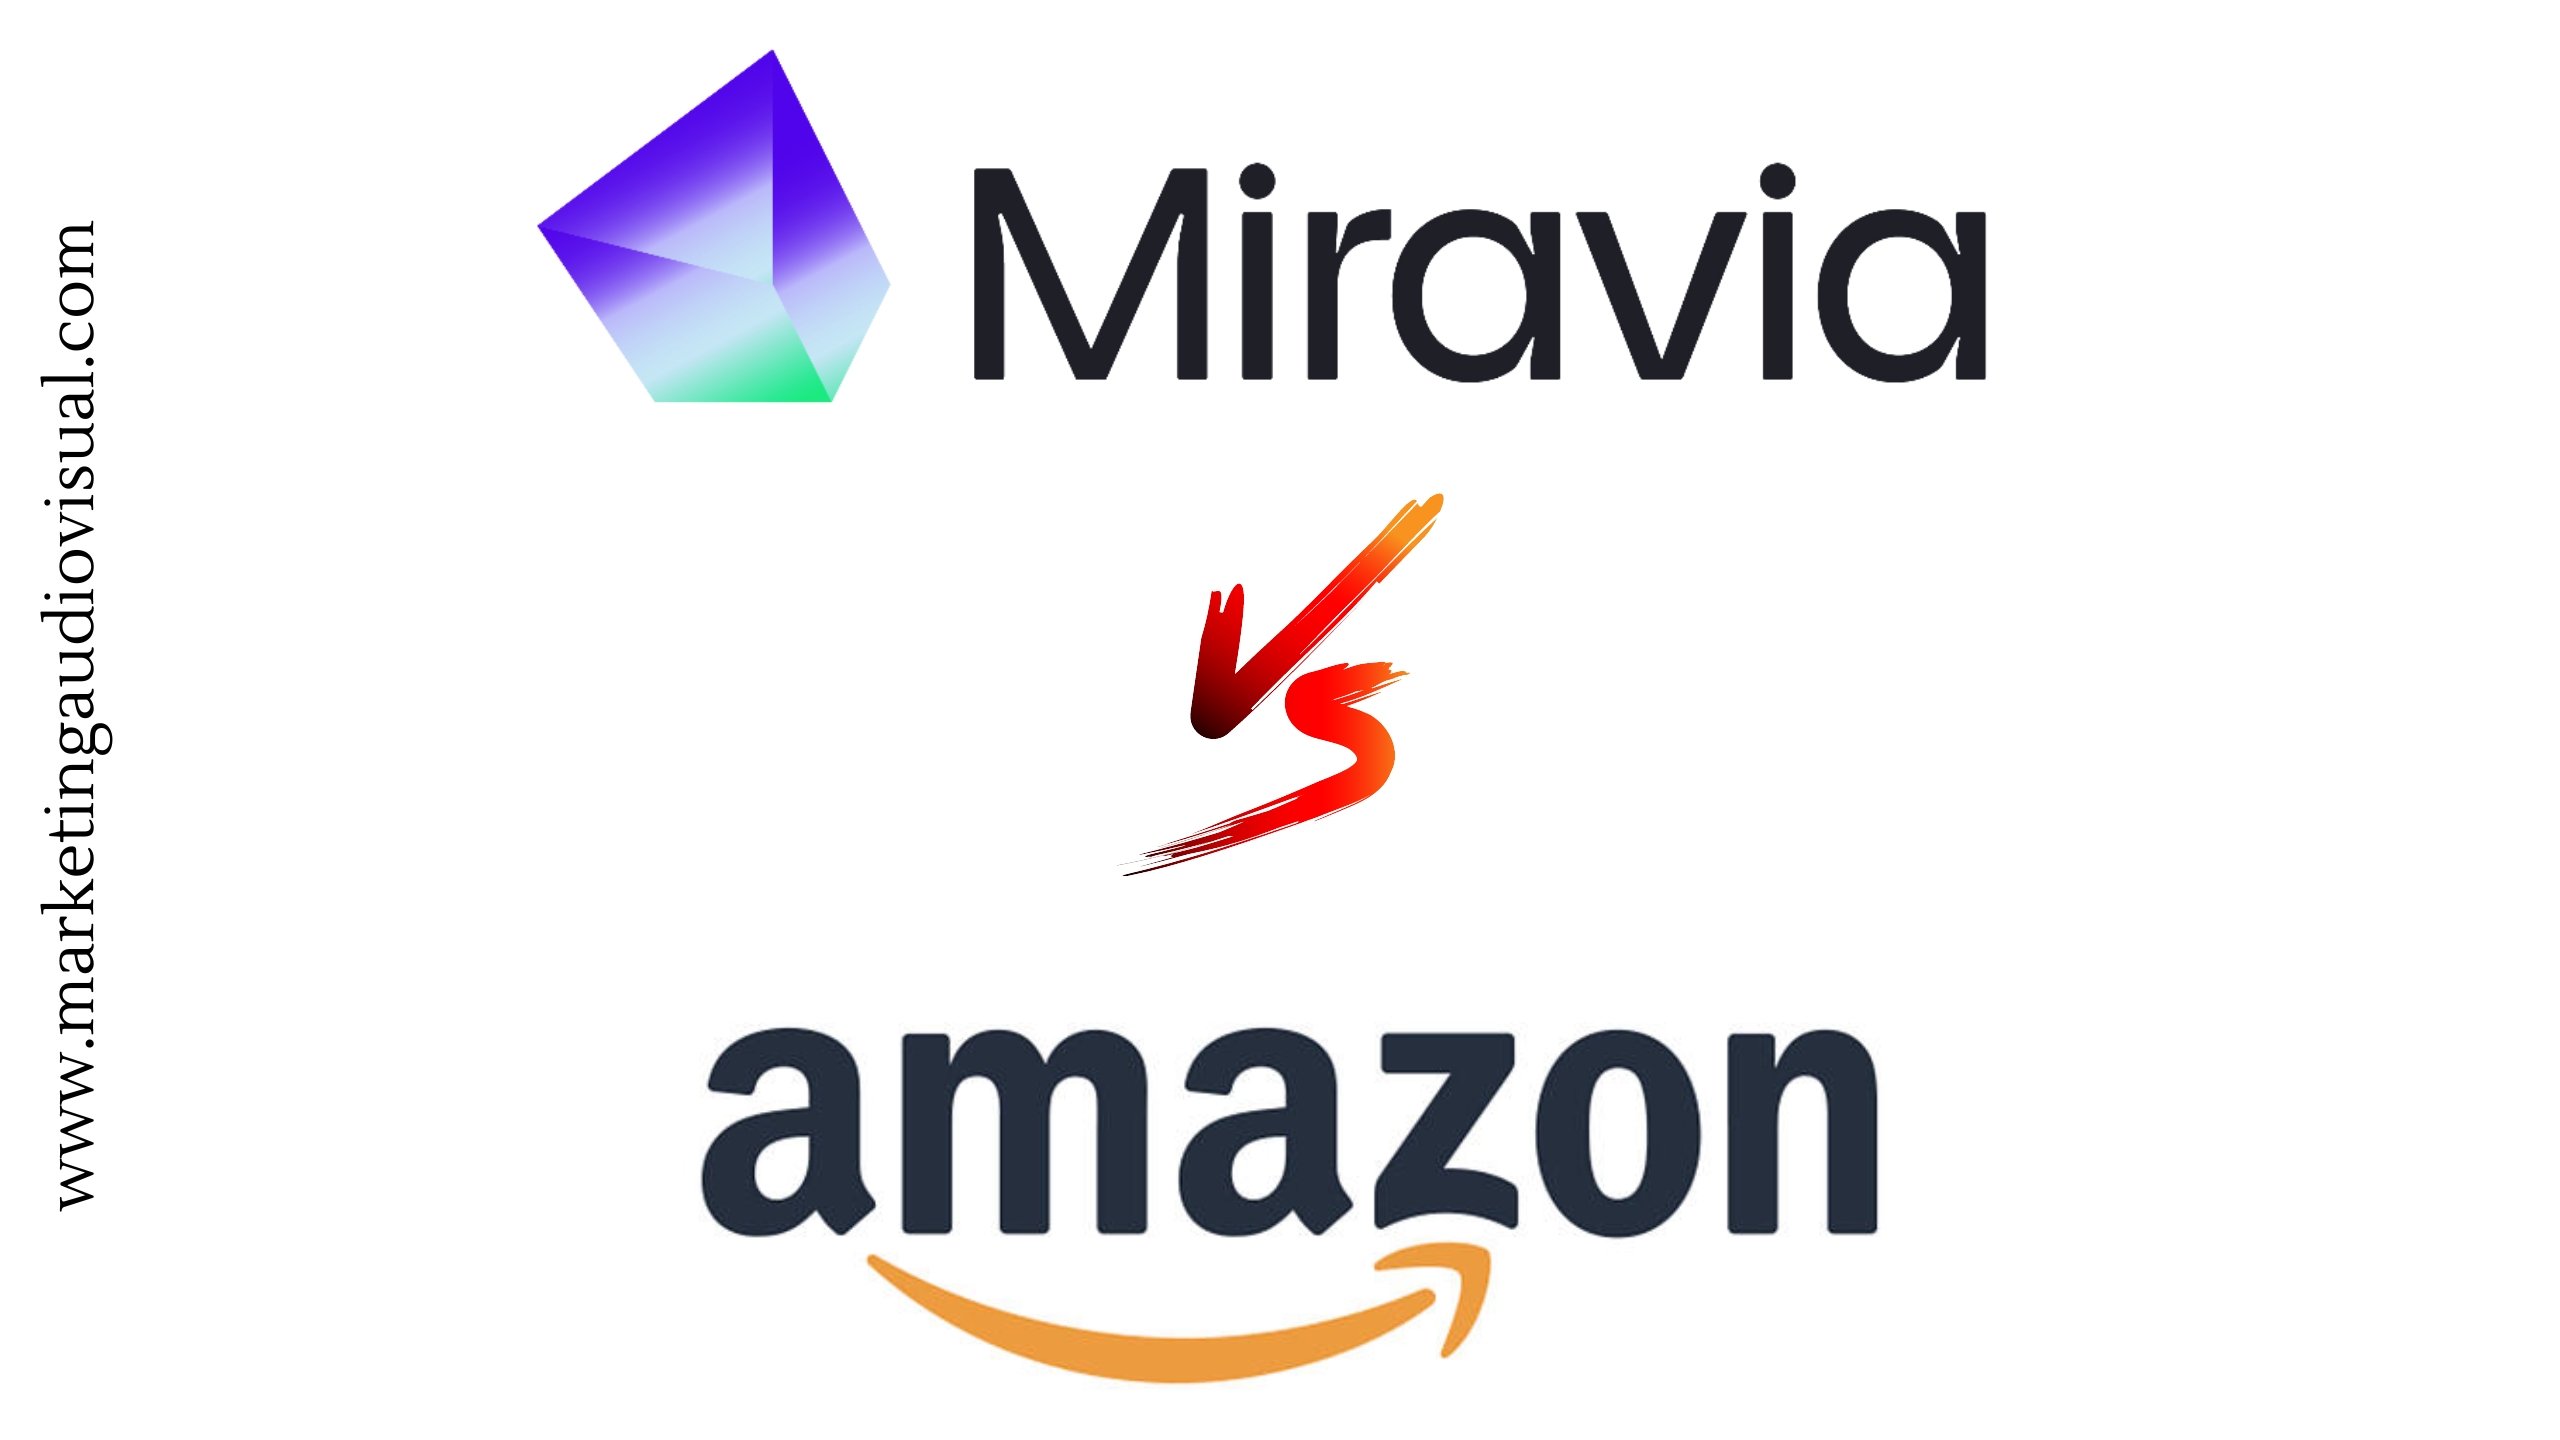 ¿Será Miravia el nuevo marketplace que compita con Amazon?   